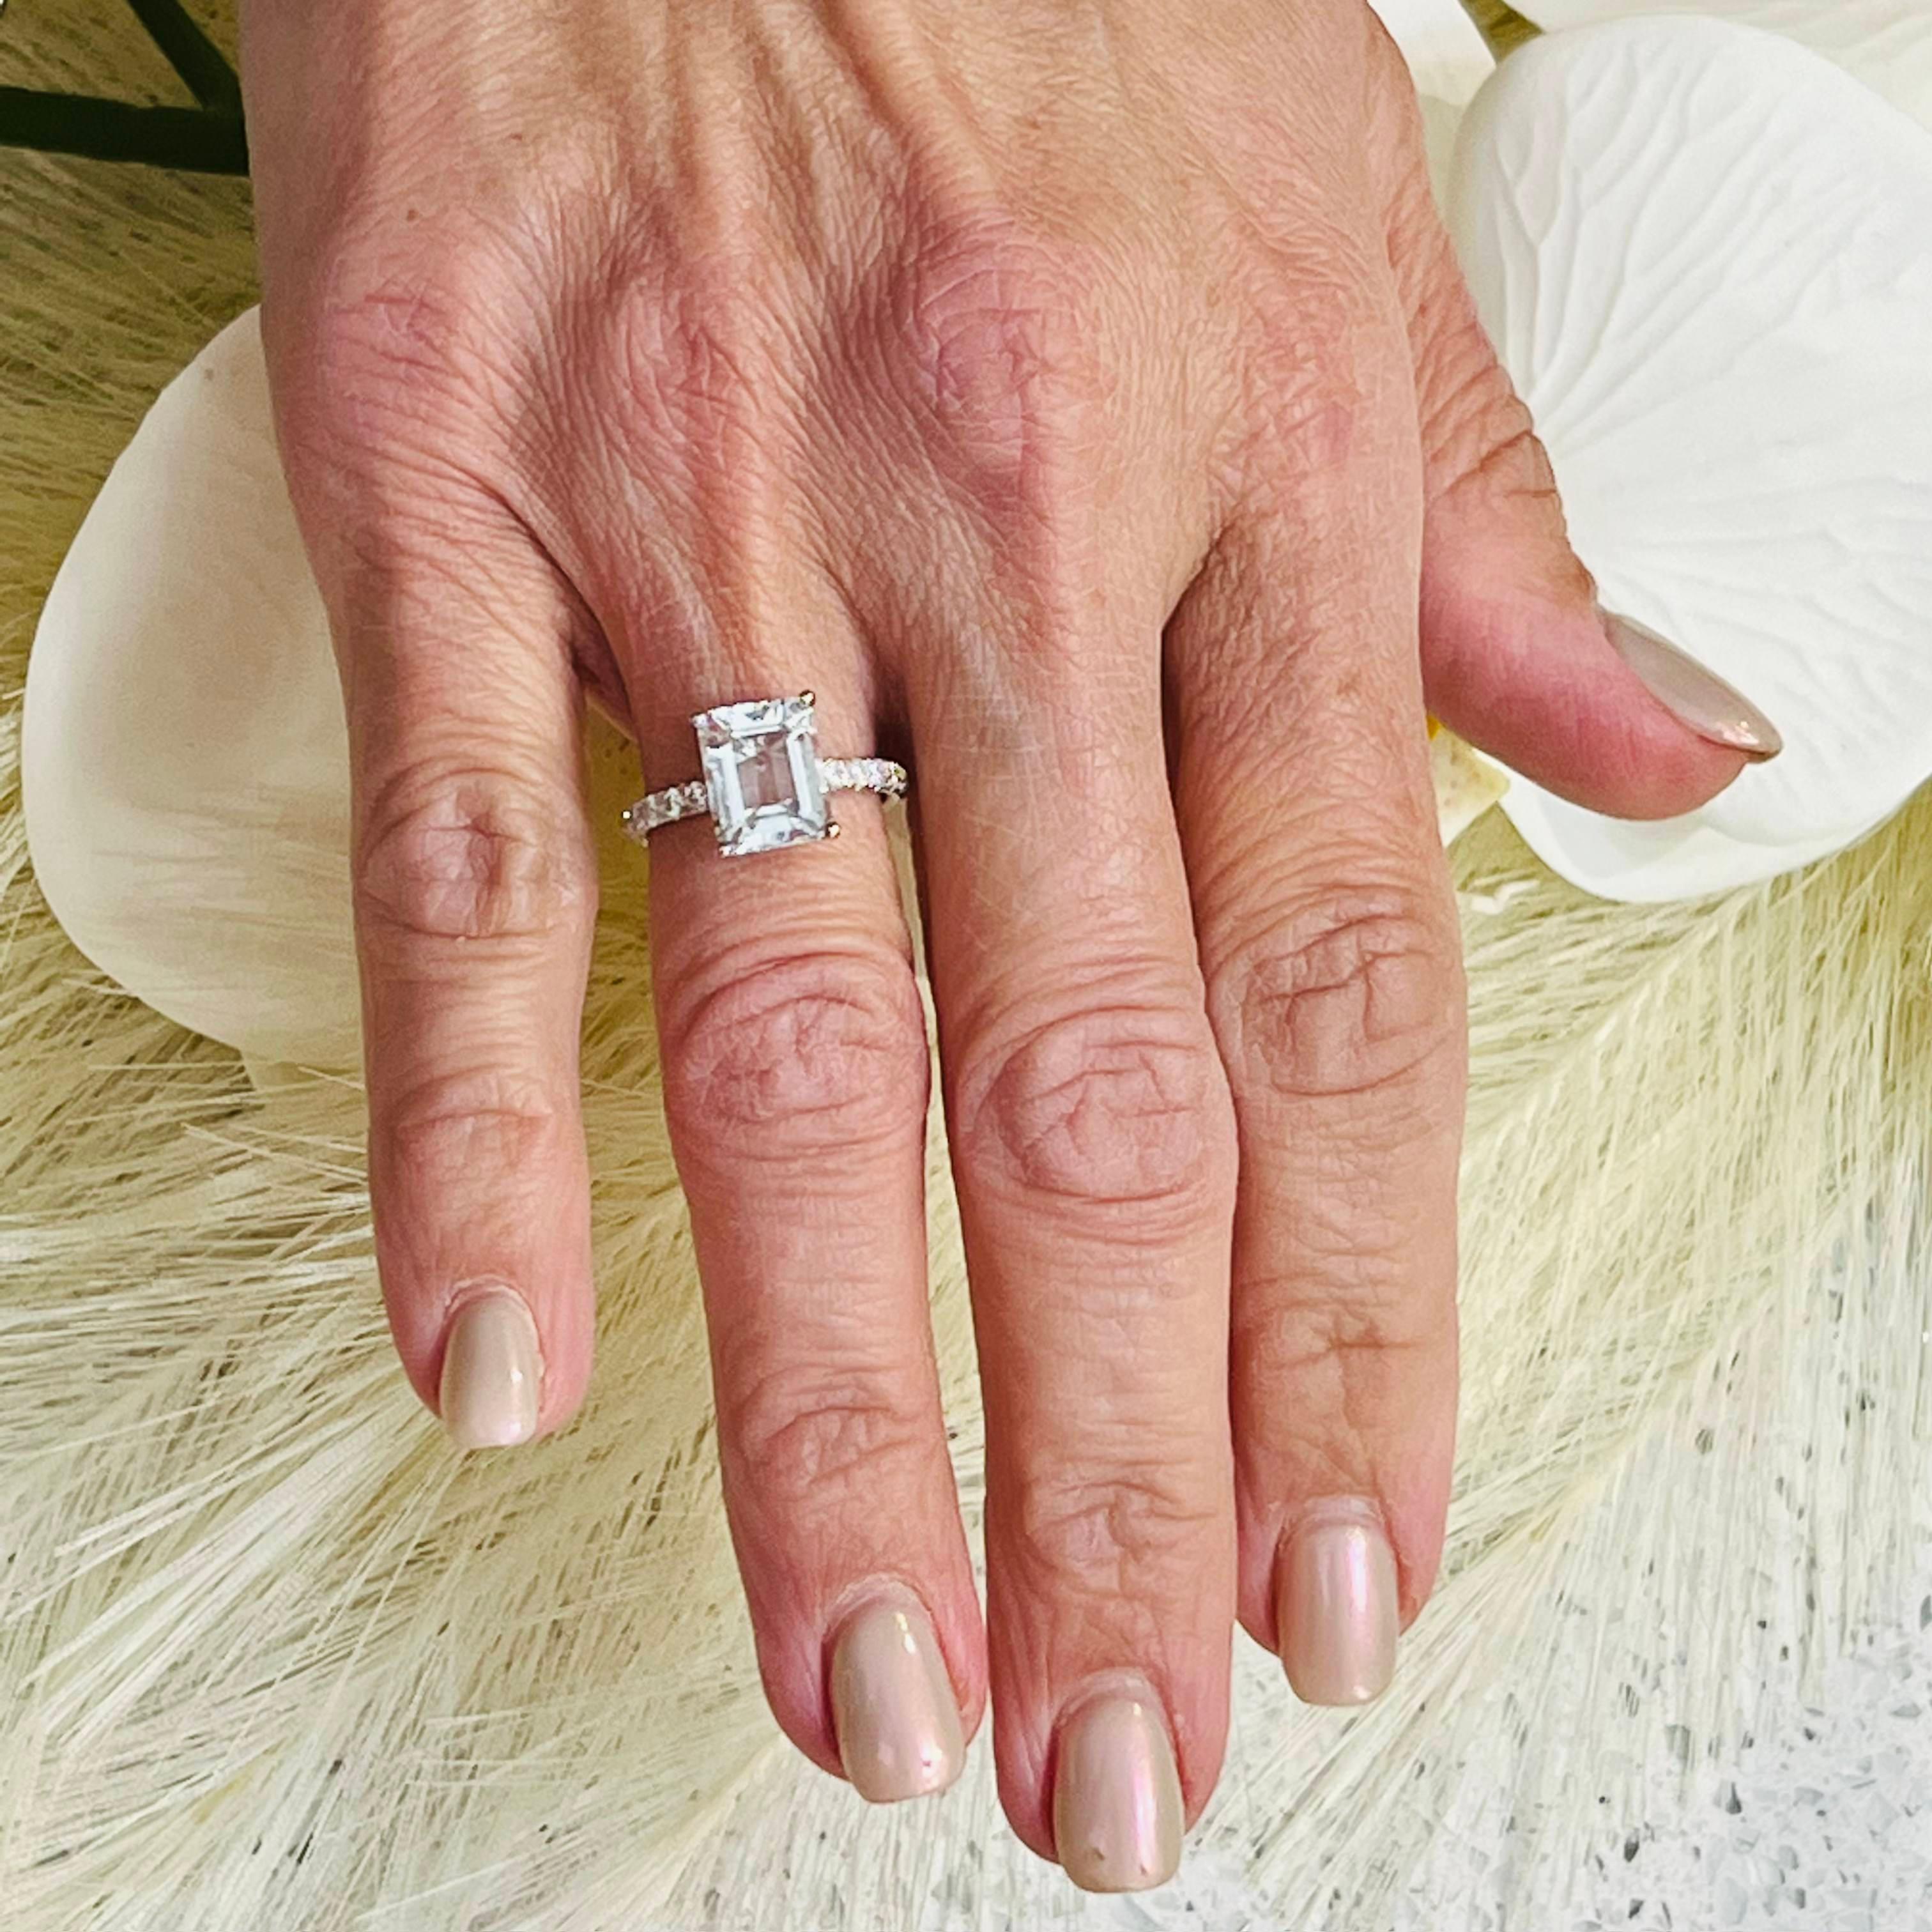 Natürlicher Aquamarin Diamant Ring Größe 6,5 14k W Gold 3,29 TCW zertifiziert $4.950 217106

SCHIMMERT WIE EIN DIAMANT

Dies ist ein einzigartiges, maßgeschneidertes, glamouröses Schmuckstück!

Nichts sagt mehr 